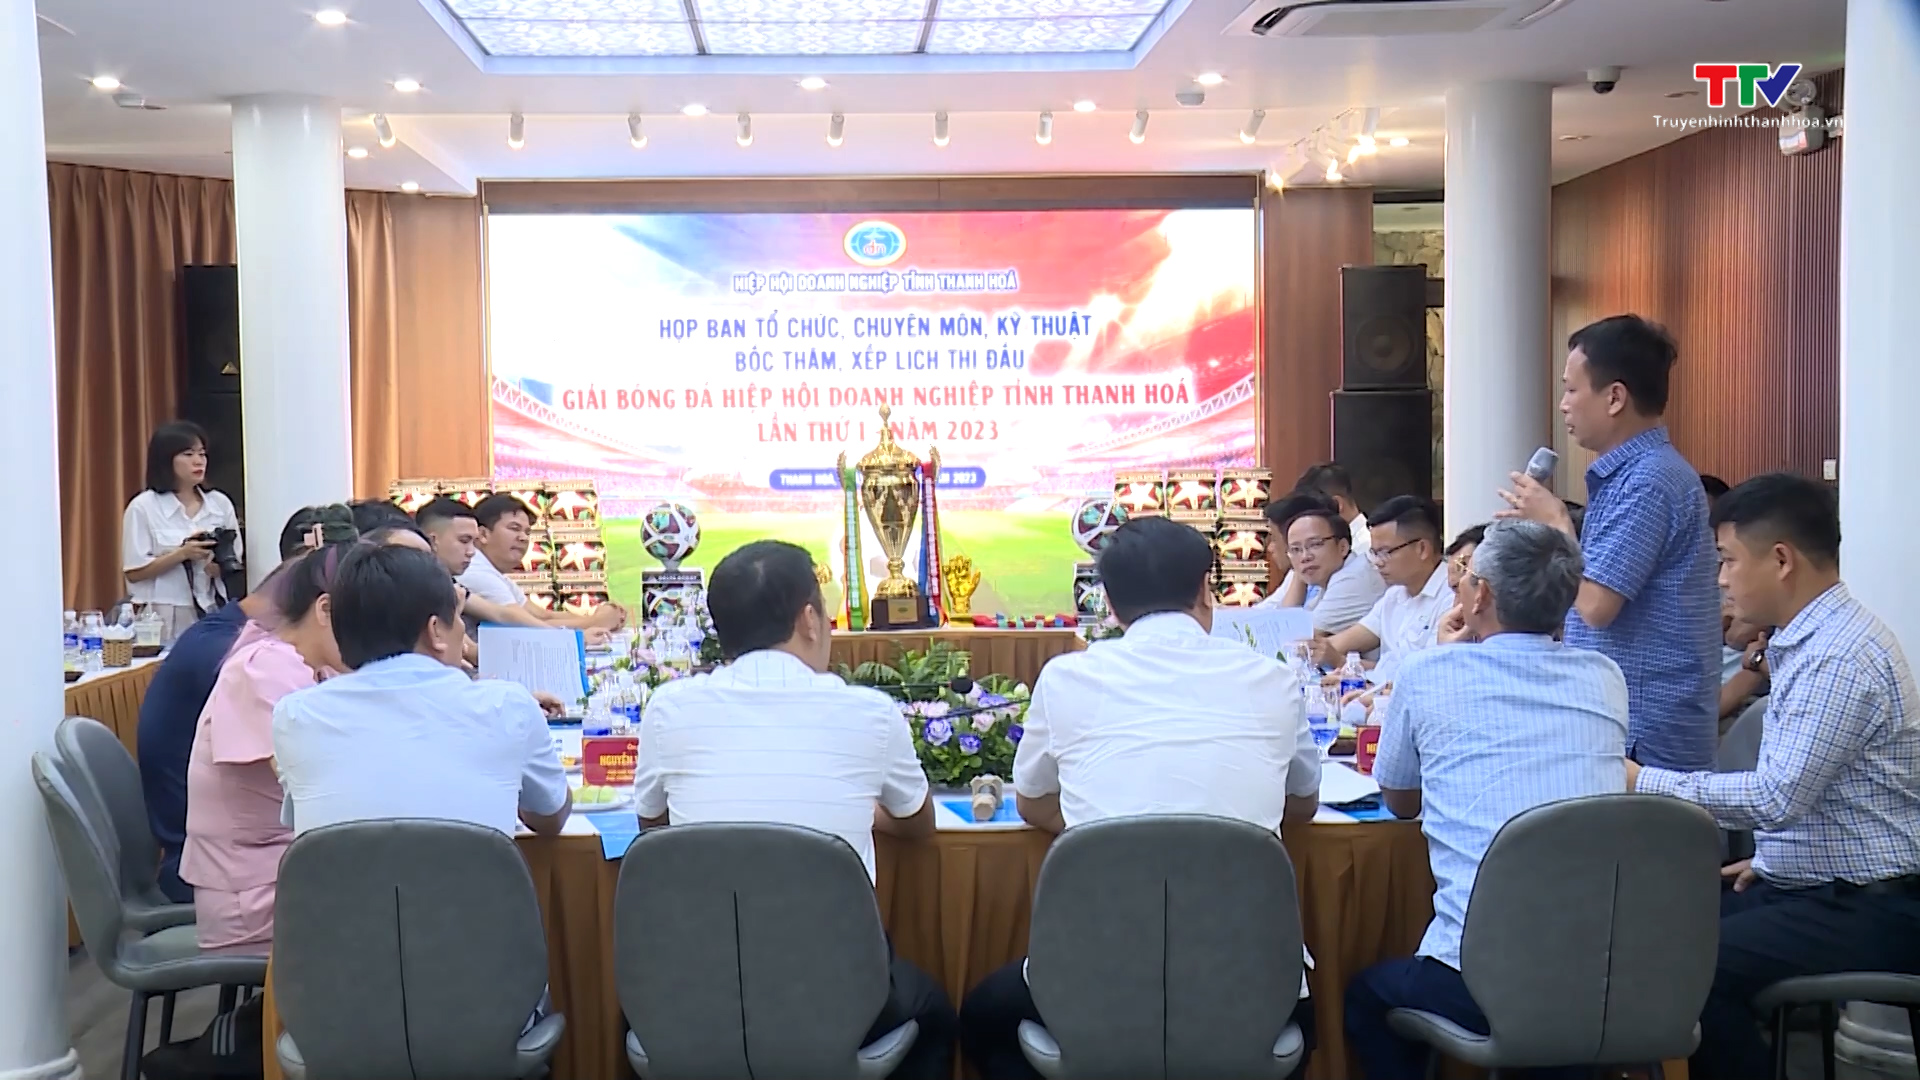 Họp Ban tổ chức và bốc thăm Giải bóng đá Hiệp hội doanh nghiệp tỉnh Thanh Hóa năm 2023 - Ảnh 2.